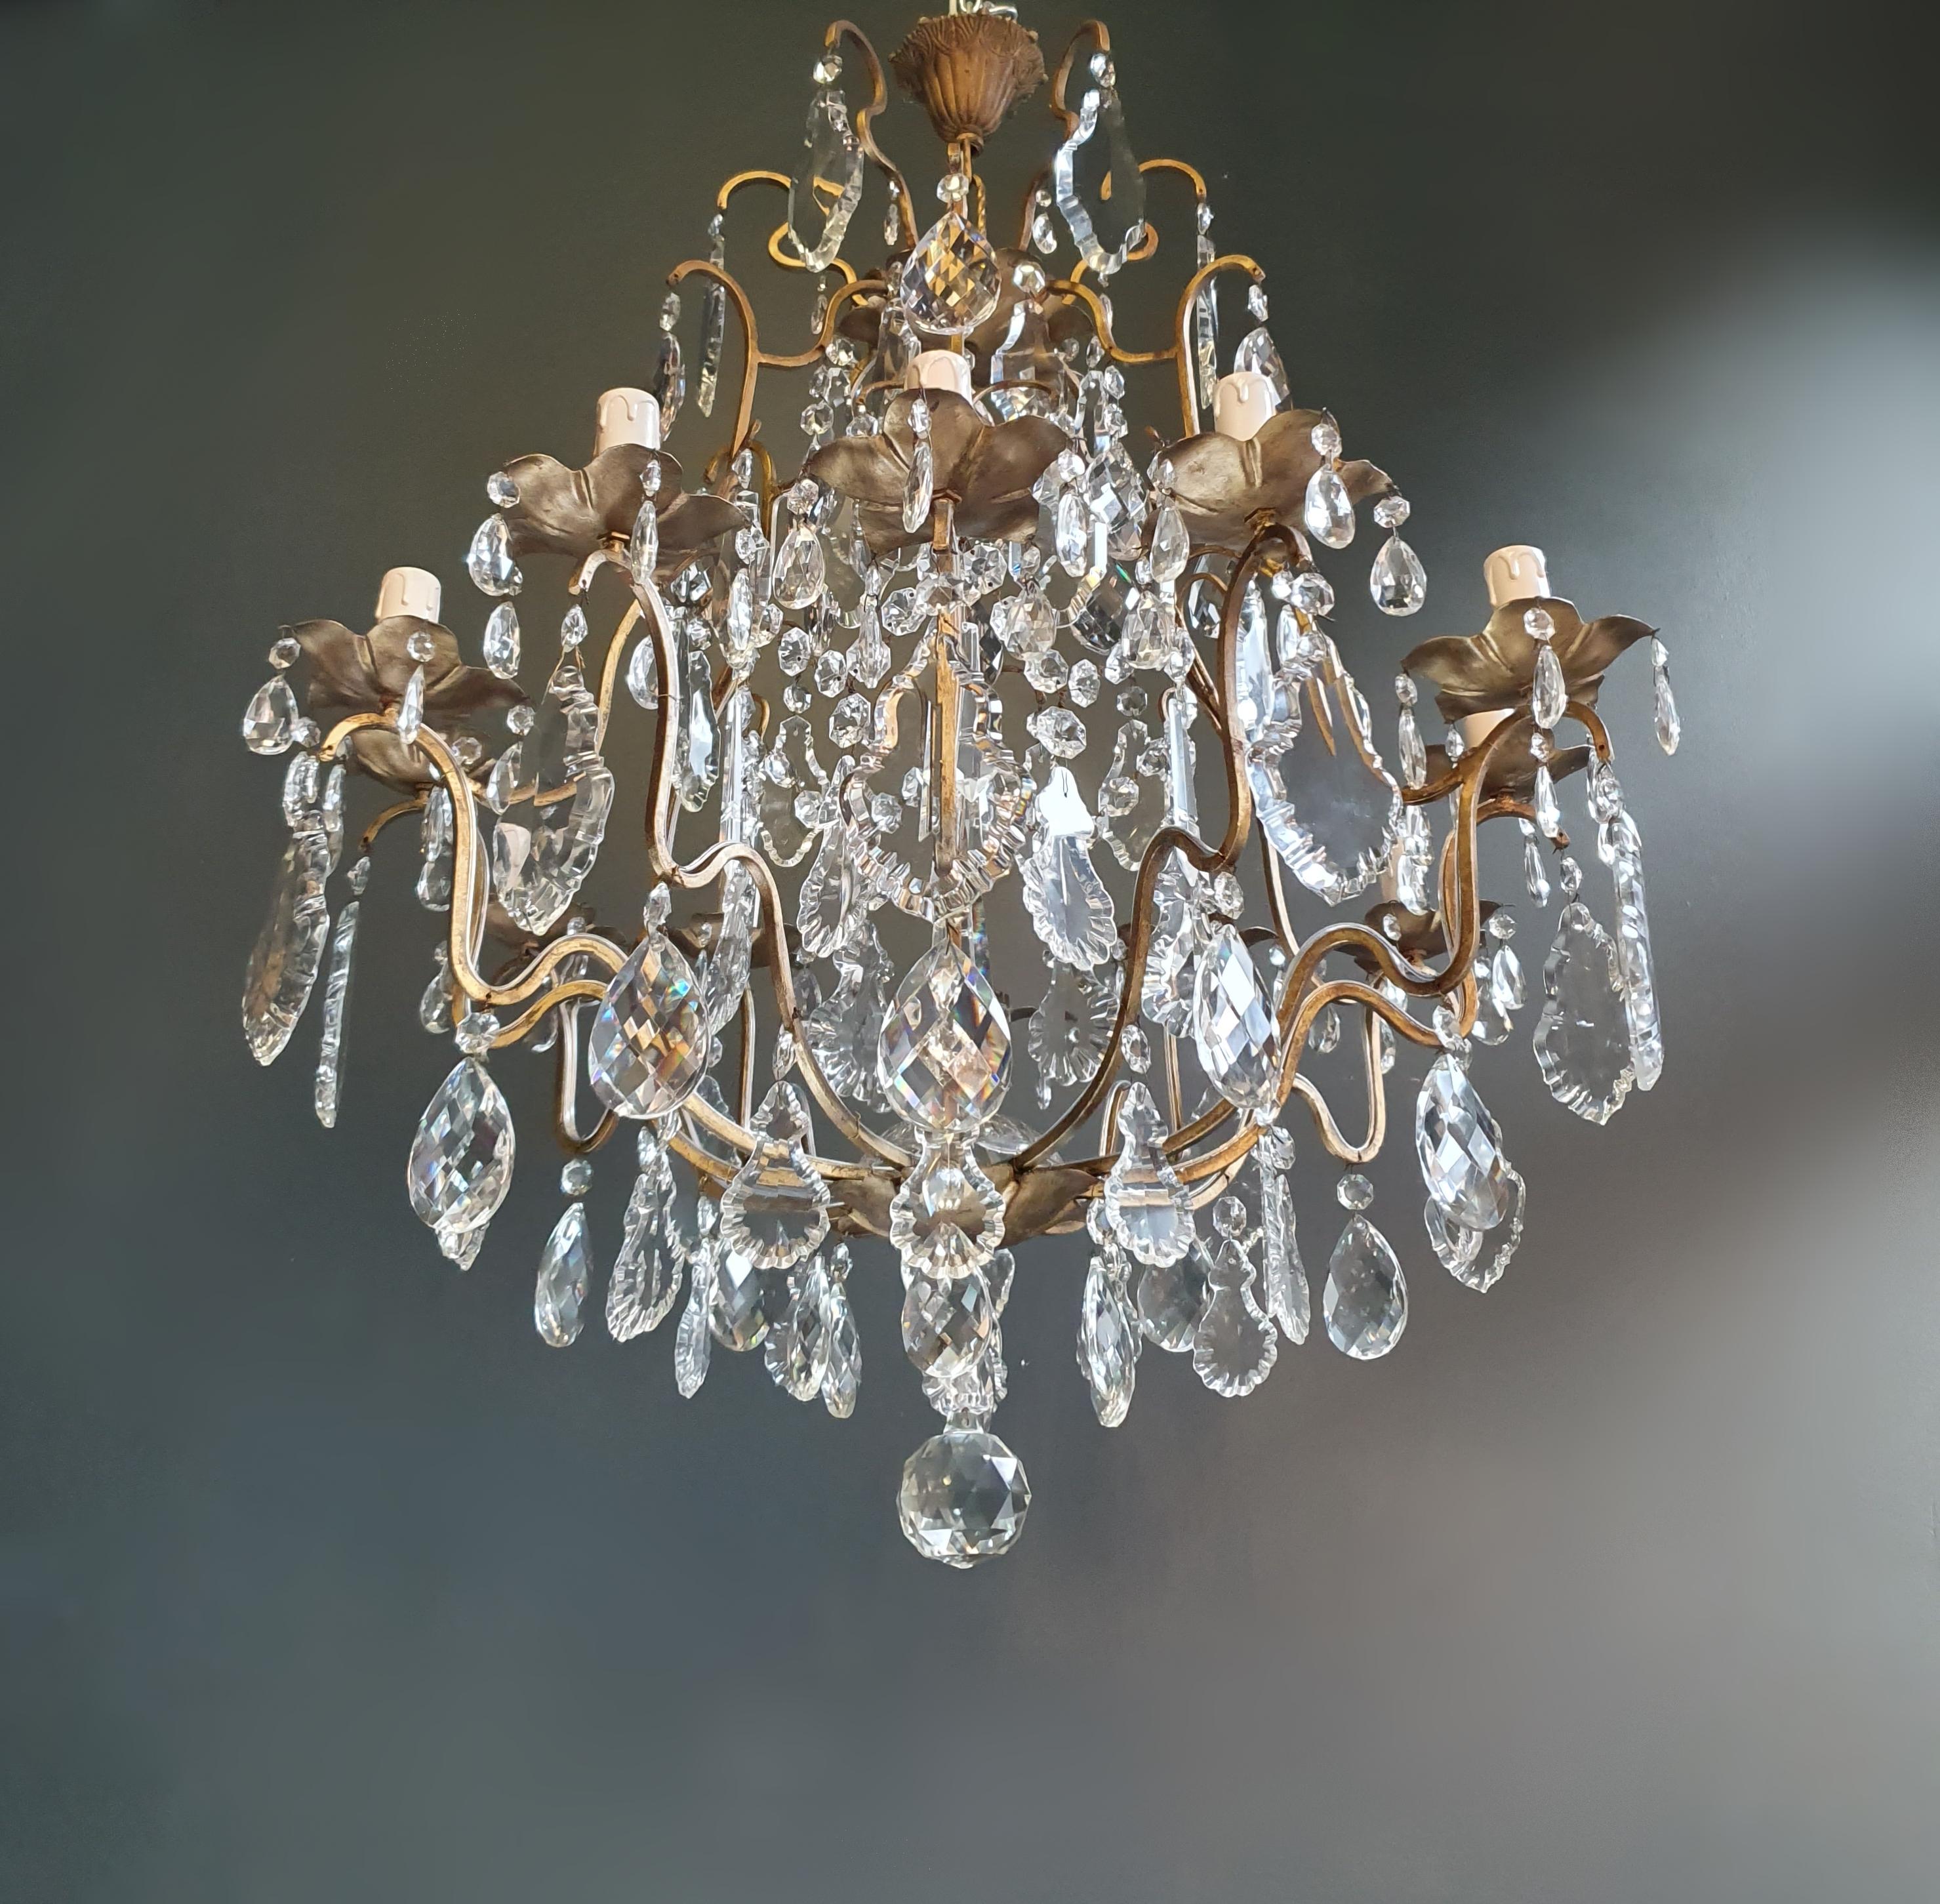 European Fine Brass Crystal Chandelier Antique Ceiling Lamp Lustre Art Nouveau Lamp